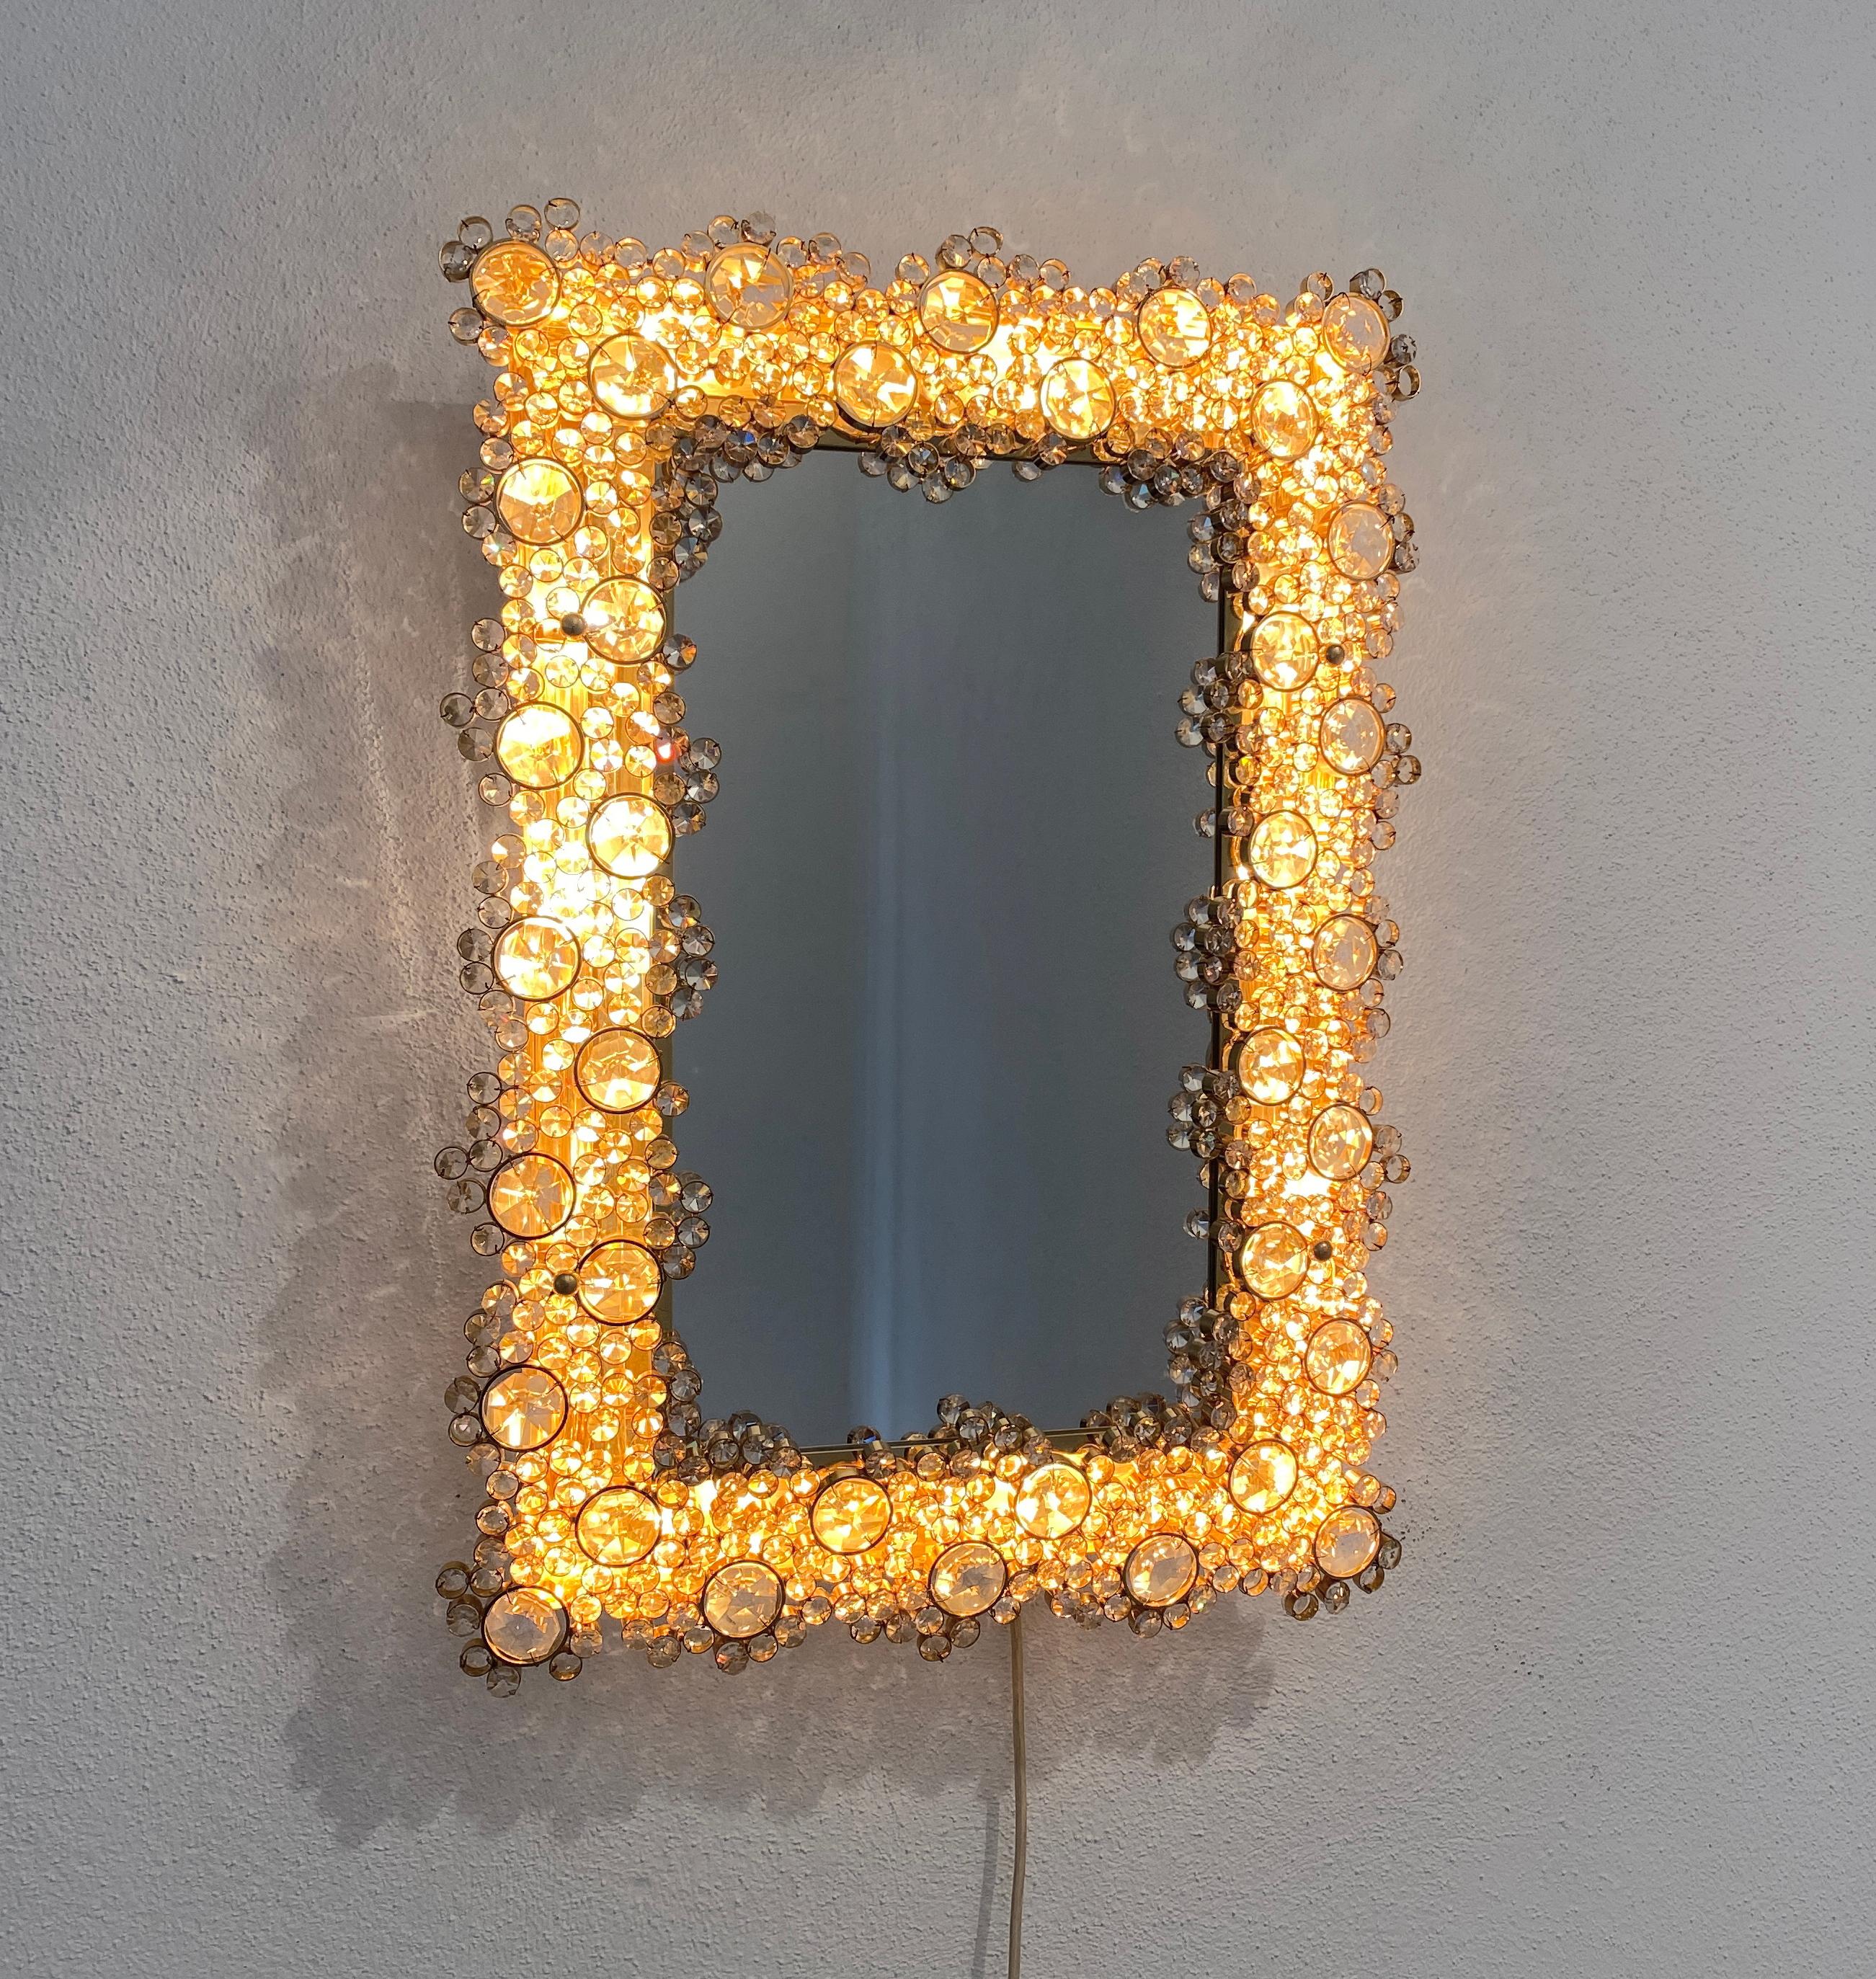 Rechteckiger Spiegel aus der Mitte des Jahrhunderts aus goldfarbenem Glas von Palwa Deutschland, 1960

Die Abmessungen sind 18,9